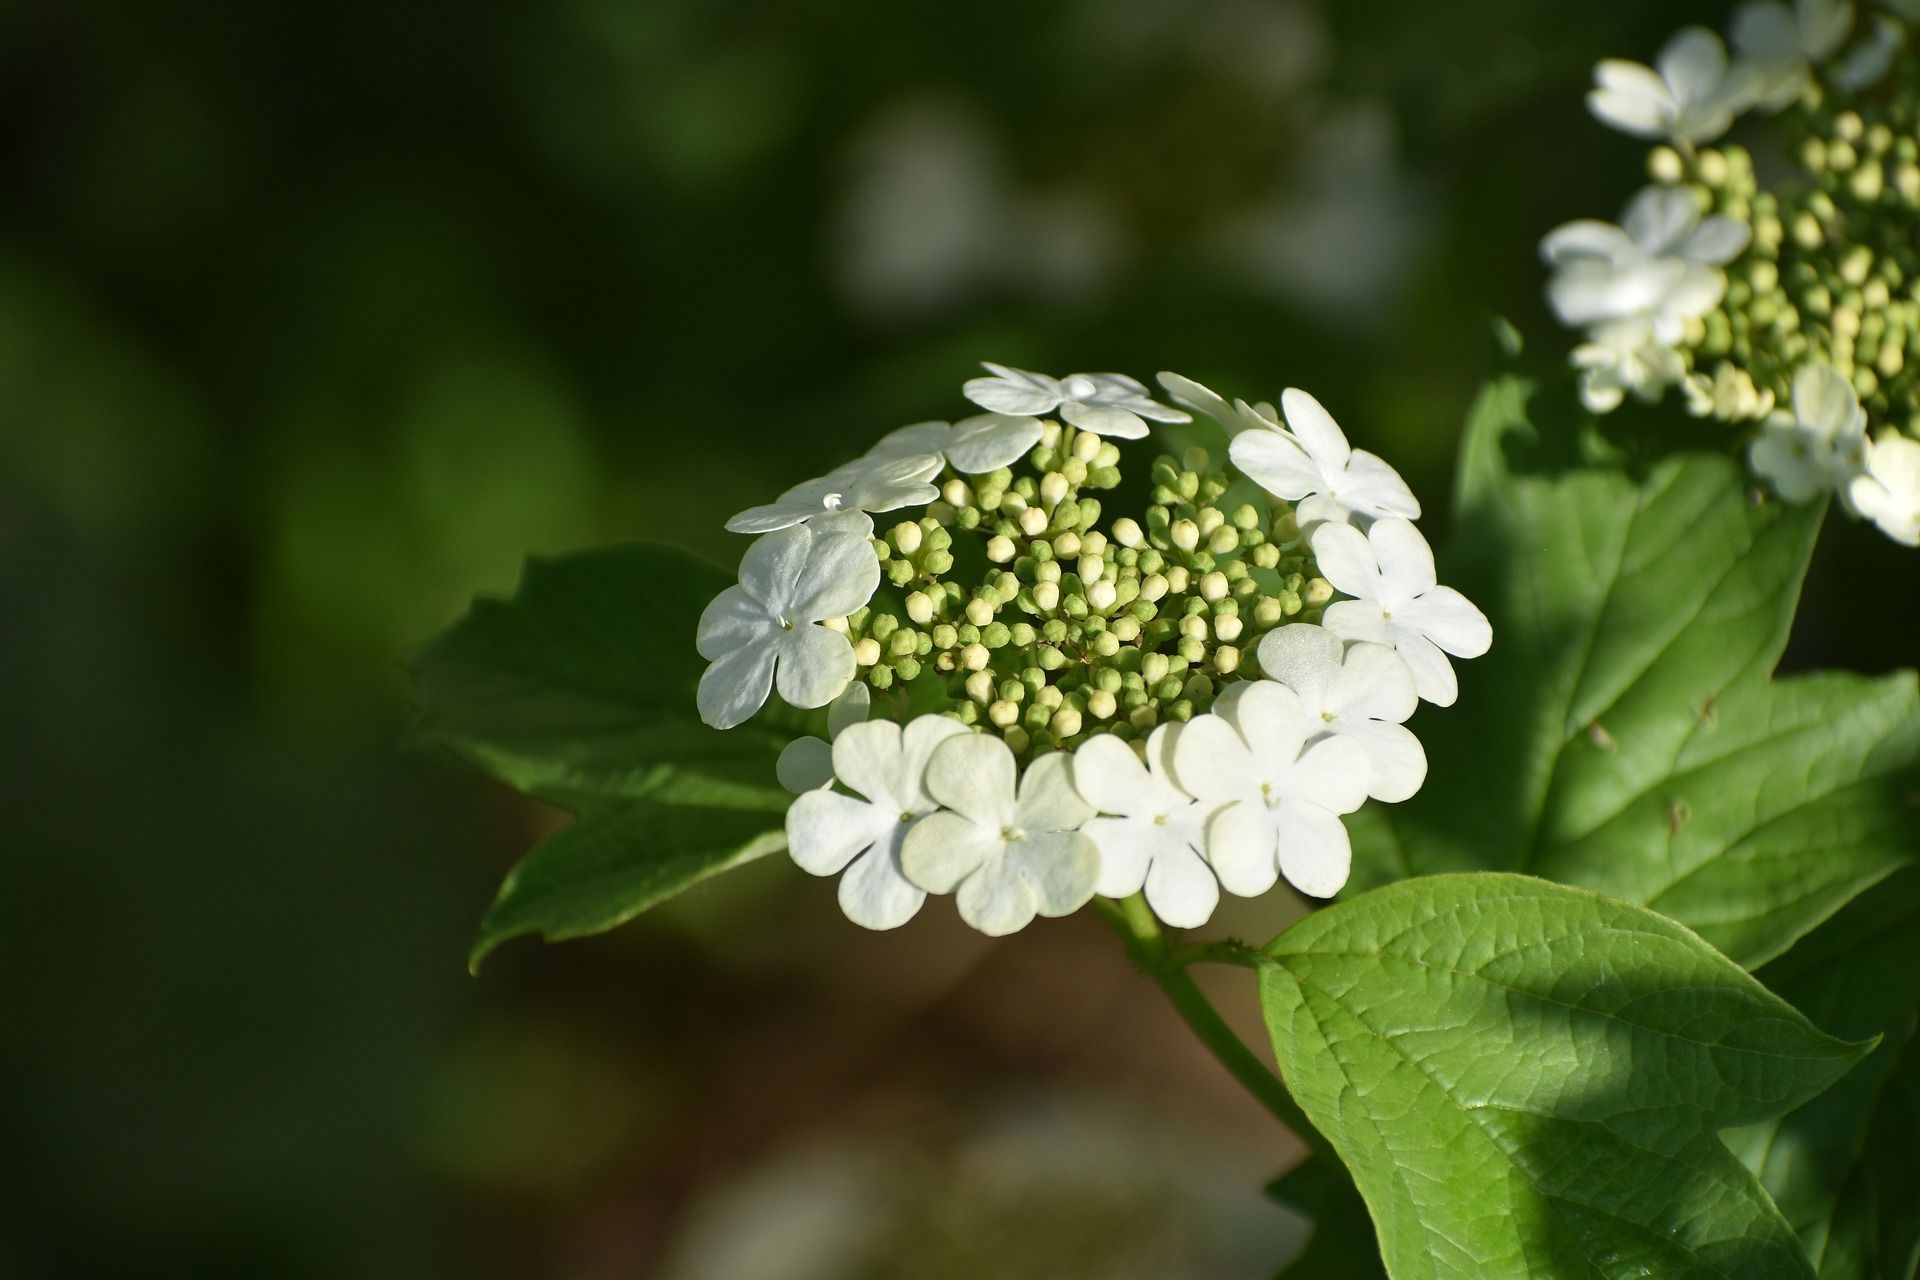 17 травня на калині вже з'явилися квіти, вже можете сіяти у відкритий ґрунт огірки, гарбузи, боби, кукурудзу / © pixabay.com